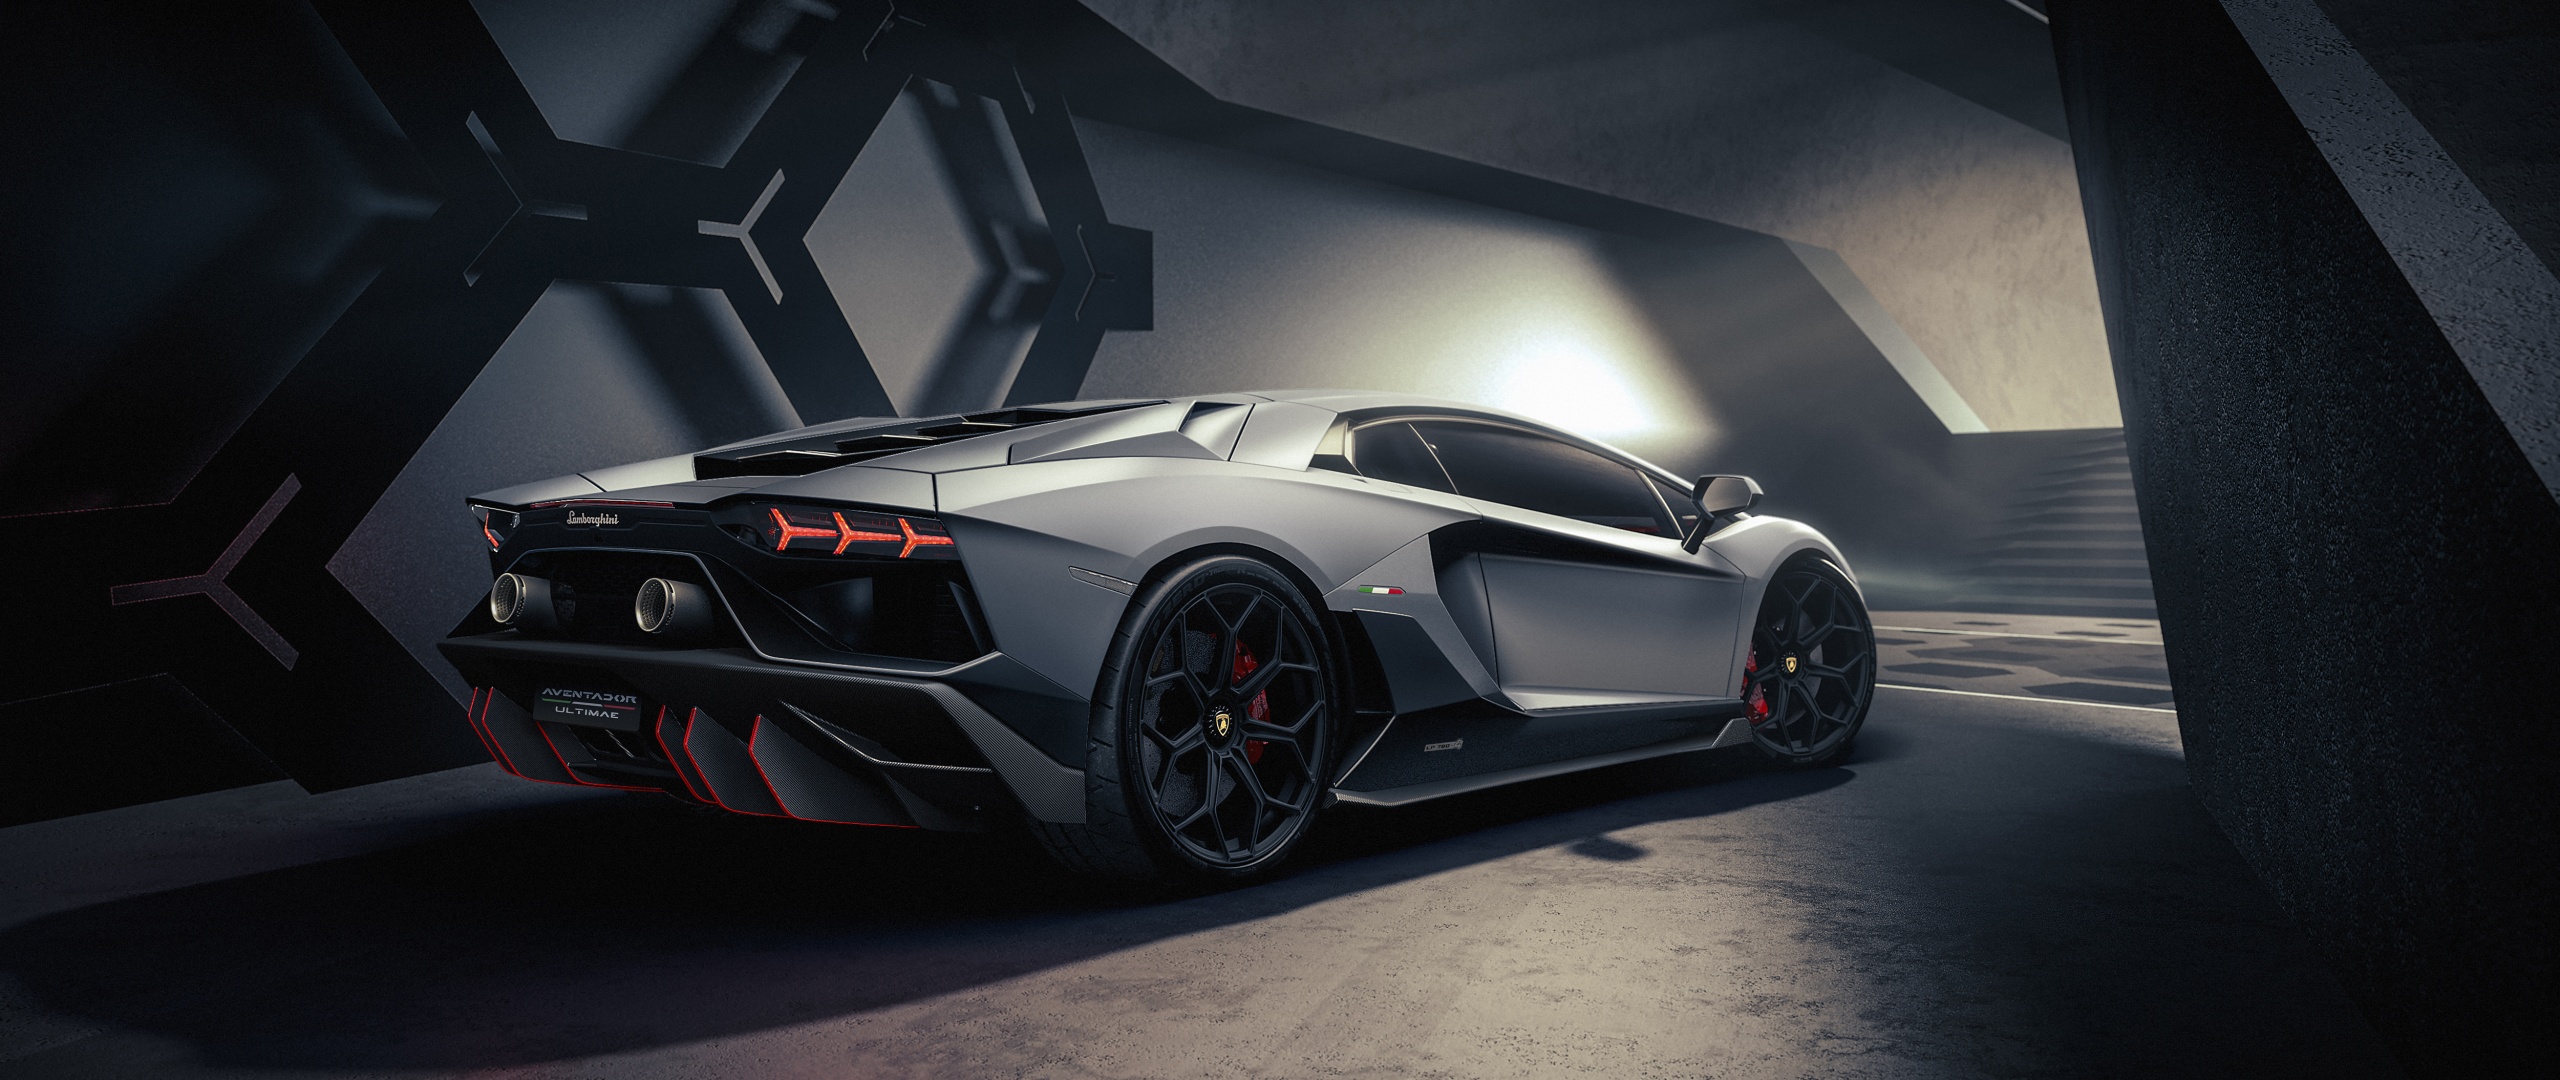 Chào đón Lamborghini Aventador - một trong những mẫu xe thể thao được trang bị công nghệ hiện đại nhất, với thiết kế đầy sức hút và tốc độ trên đường đua chưa từng có.